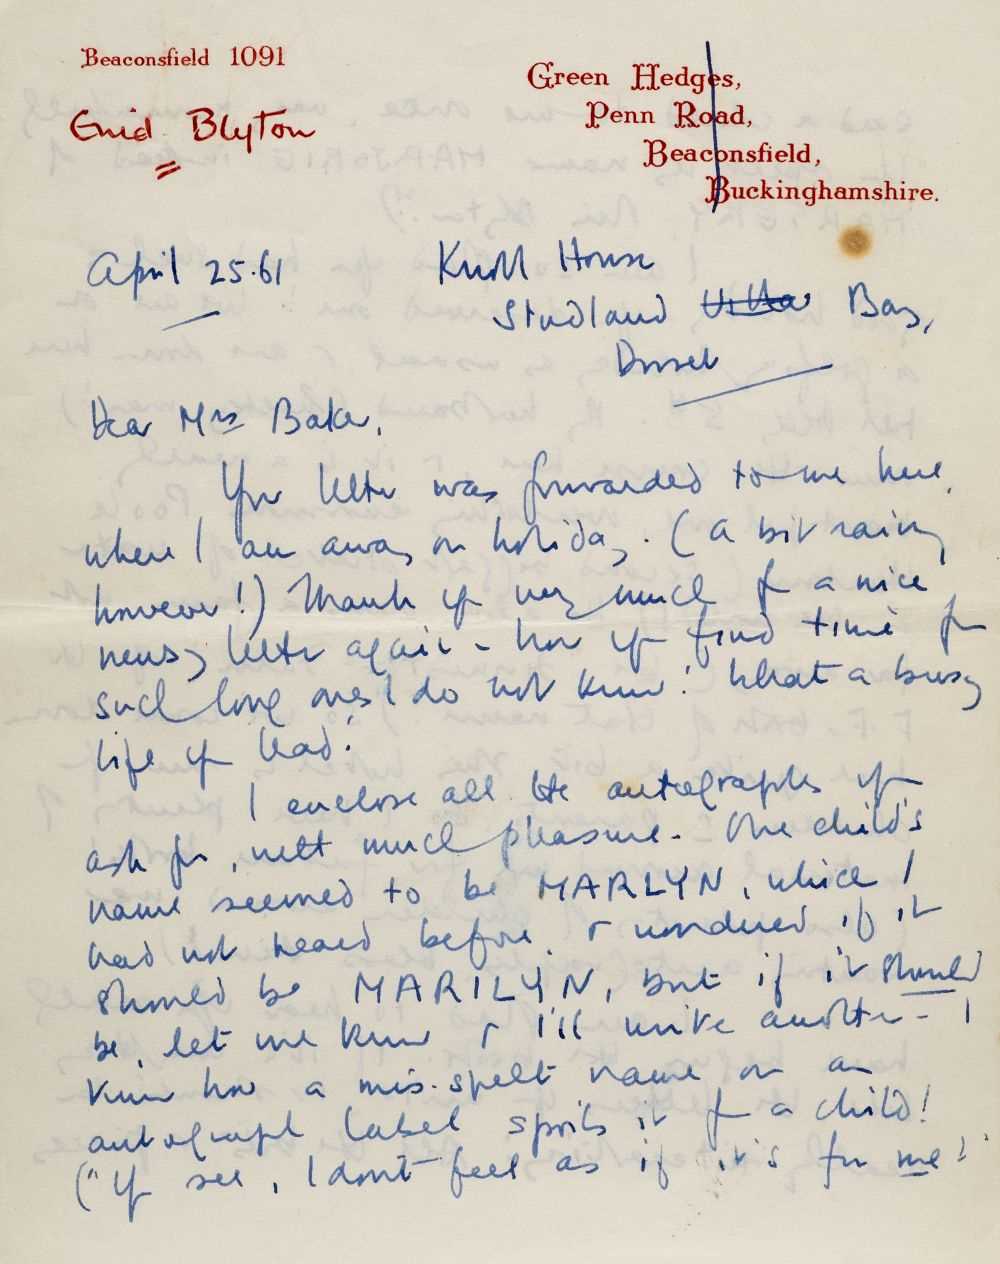 Lot 591 - Blyton (Enid, 1897-1968). Autograph letter signed, 25 April 1961